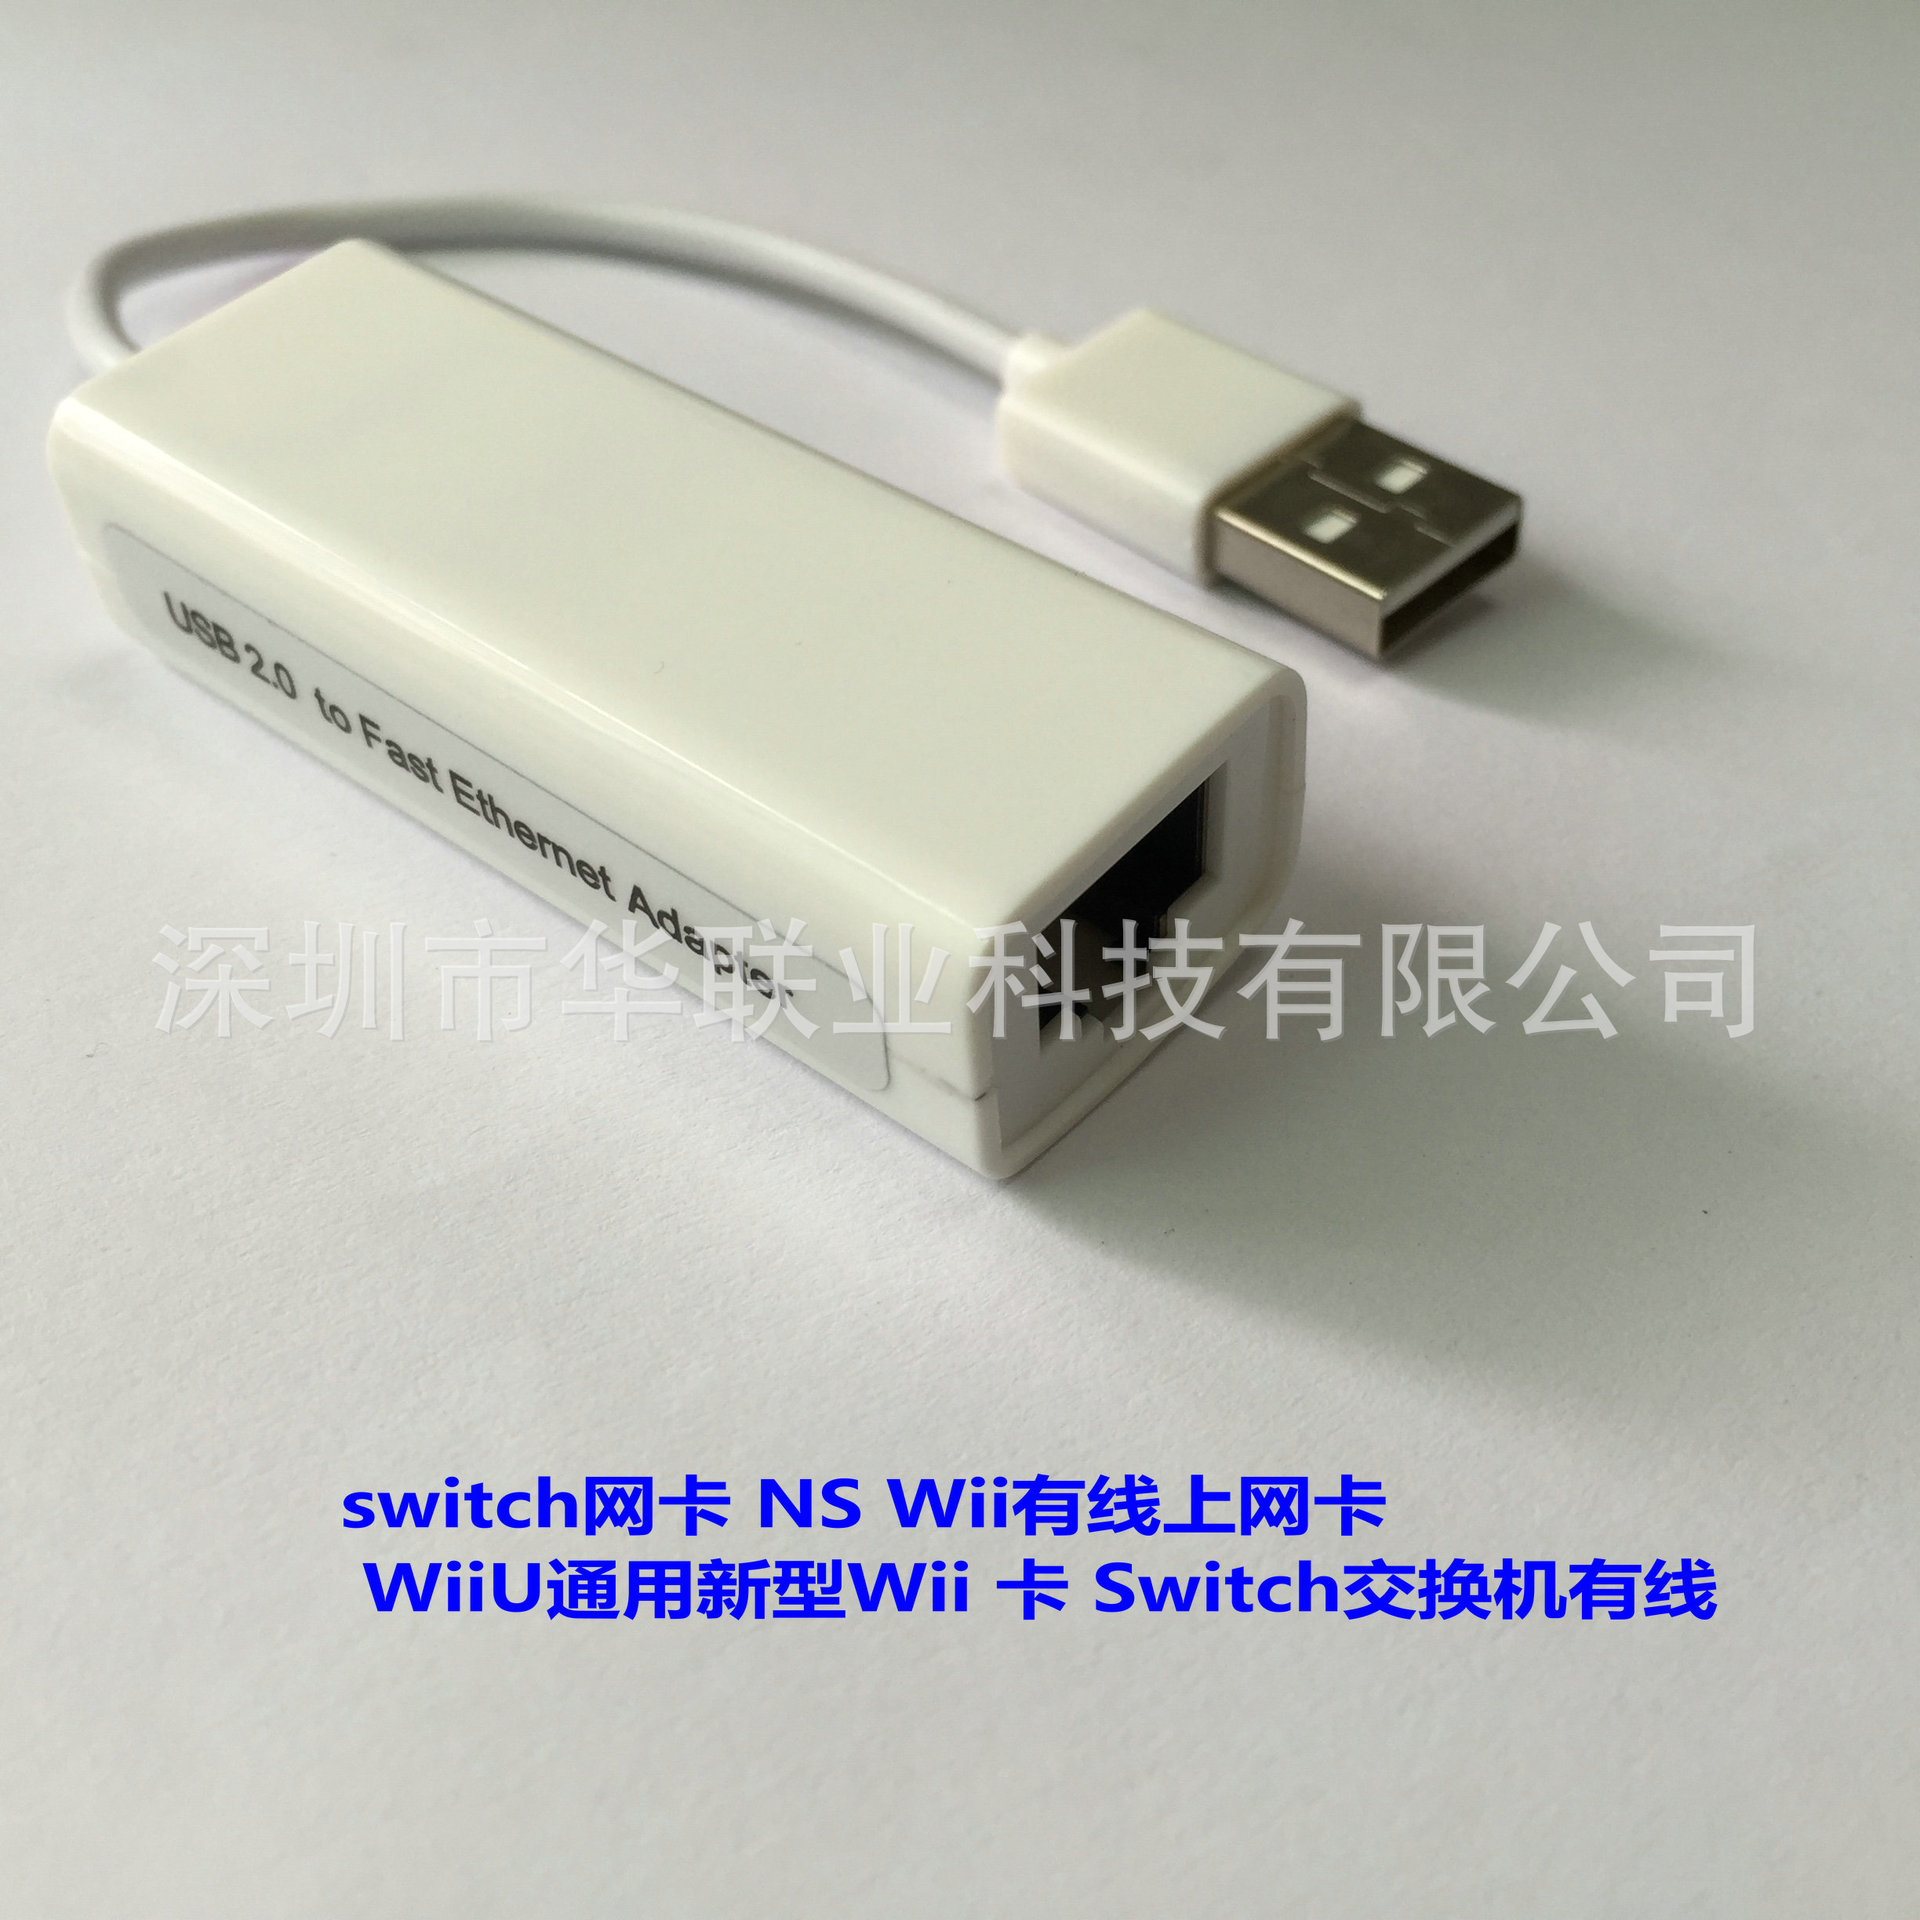 switch网卡 NS Wii上网卡 WiiU通用新型Wii 卡 Switch交换机有线